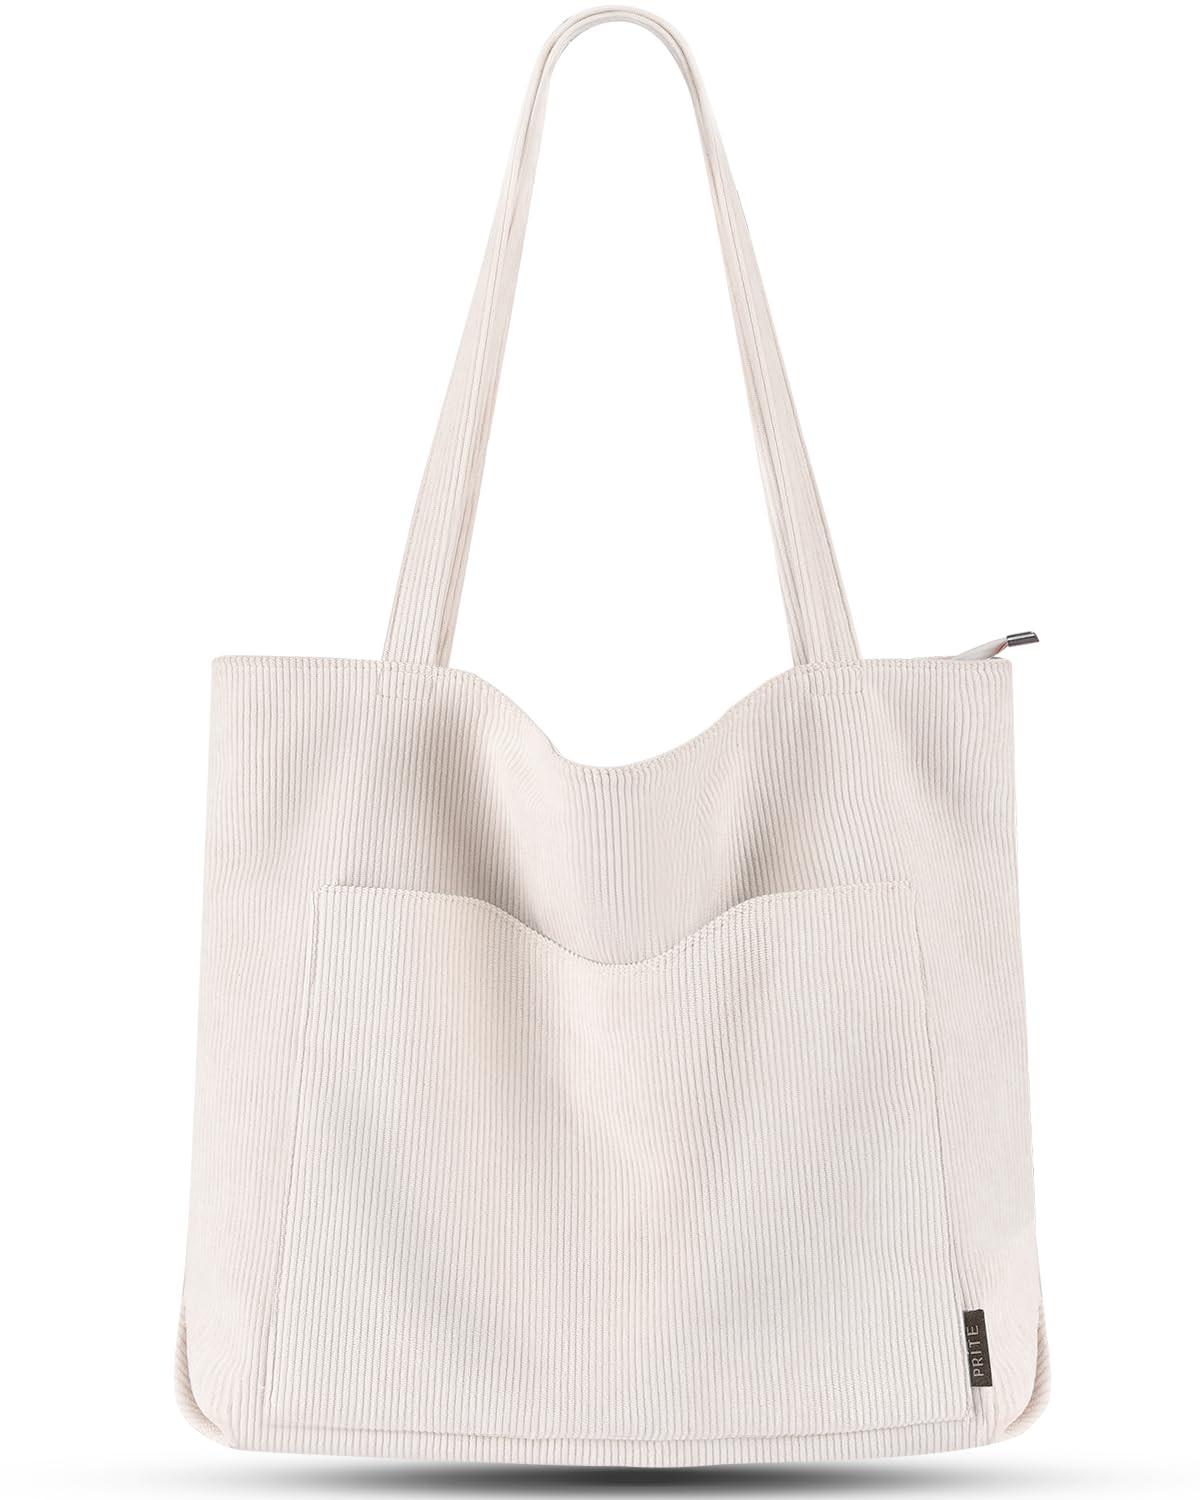 Cord Tasche Umhängetasche Mit Reißverschluss, Groß Shopper Tasche Tote Bag Handtasche Damen Offwhite ONE SIZE von Only-bags.store